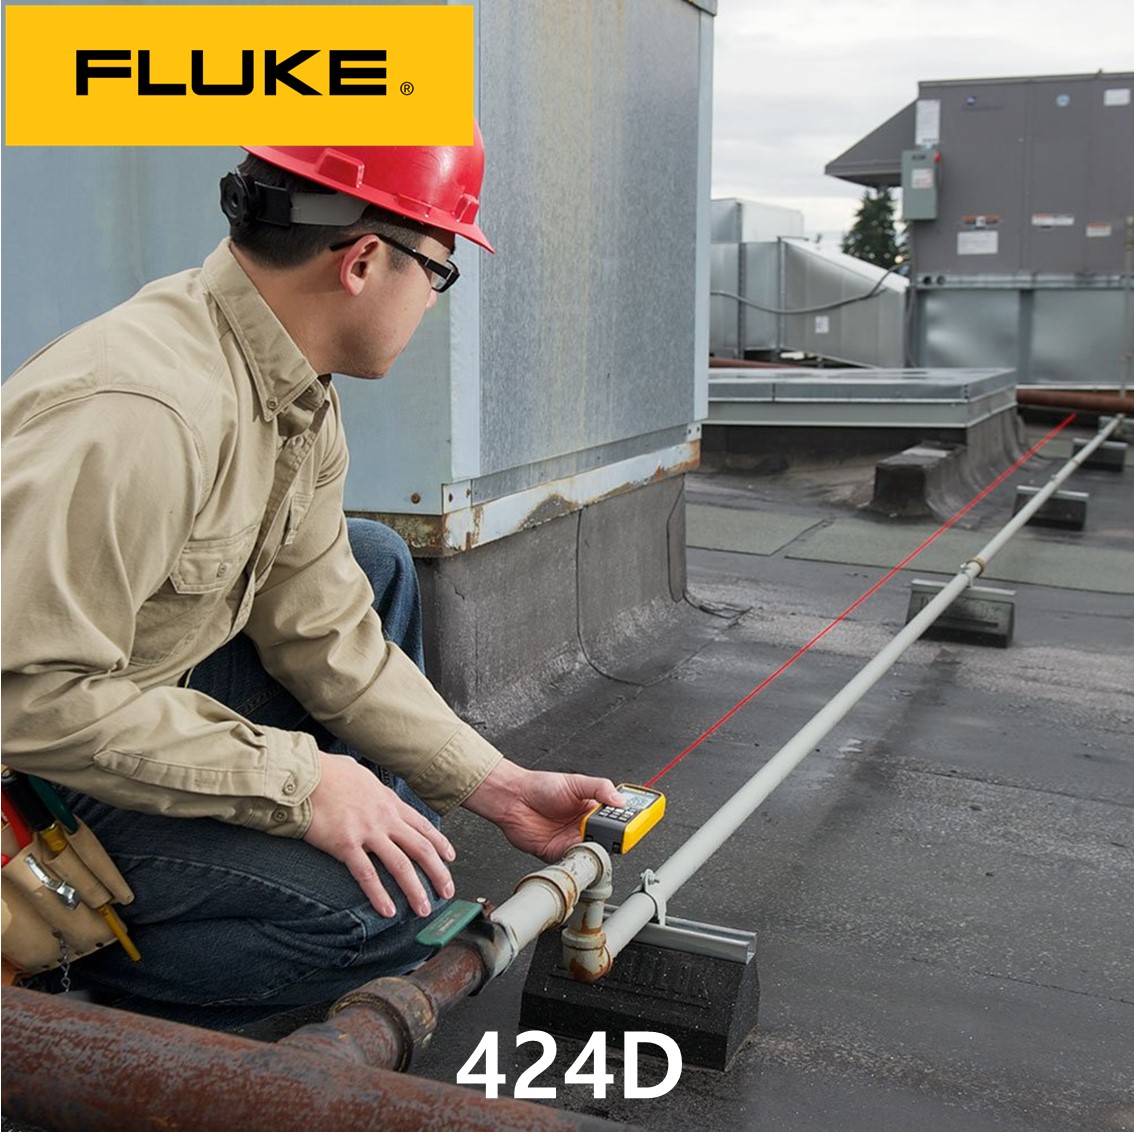 [FLUKE 424D] 정품 플루크 레이저거리측정기, 레이저줄자 100M